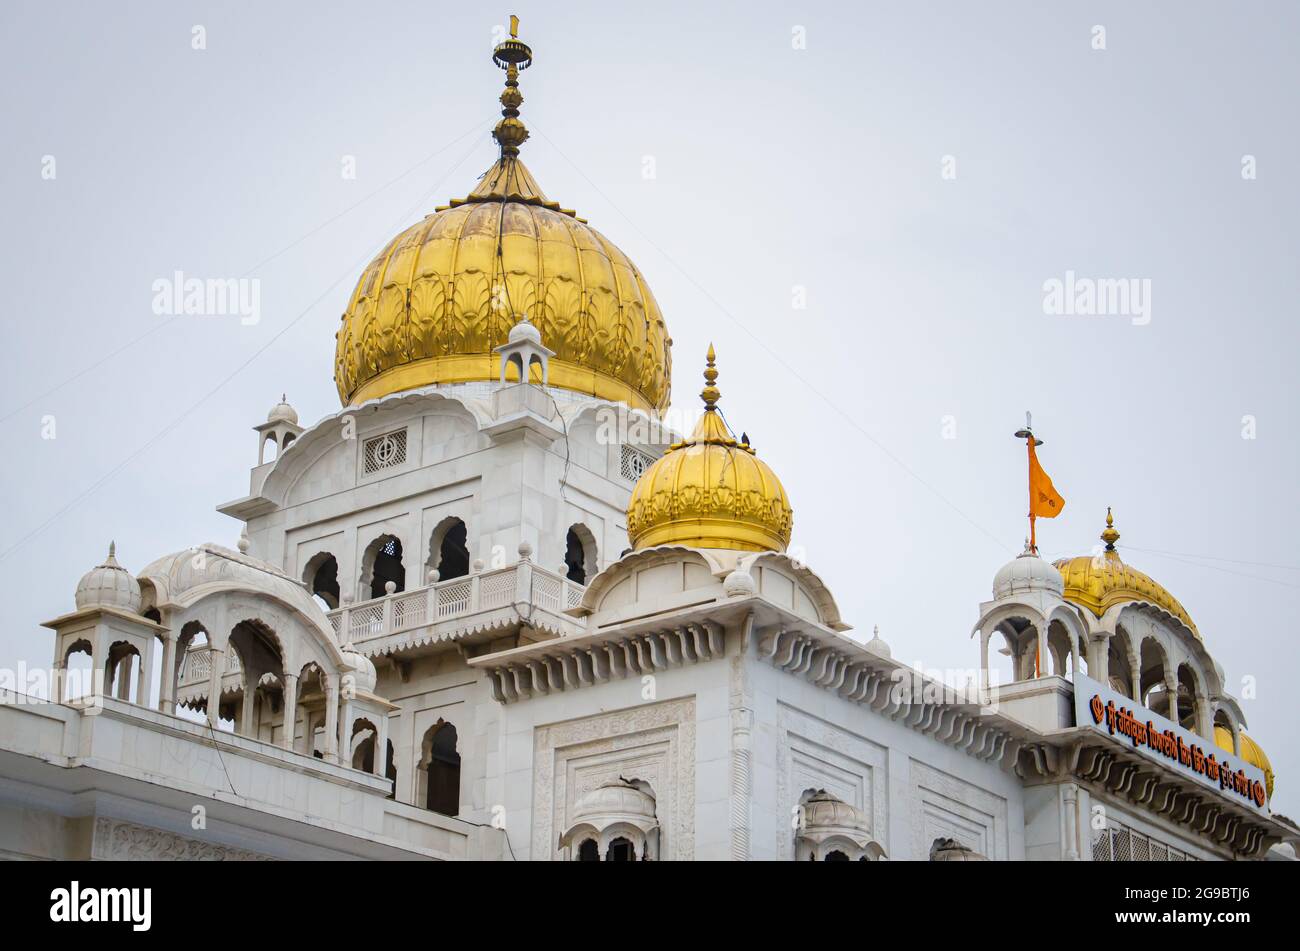 Religious place for Sikhs Bangla Sahib Gurudwara Stock Photo